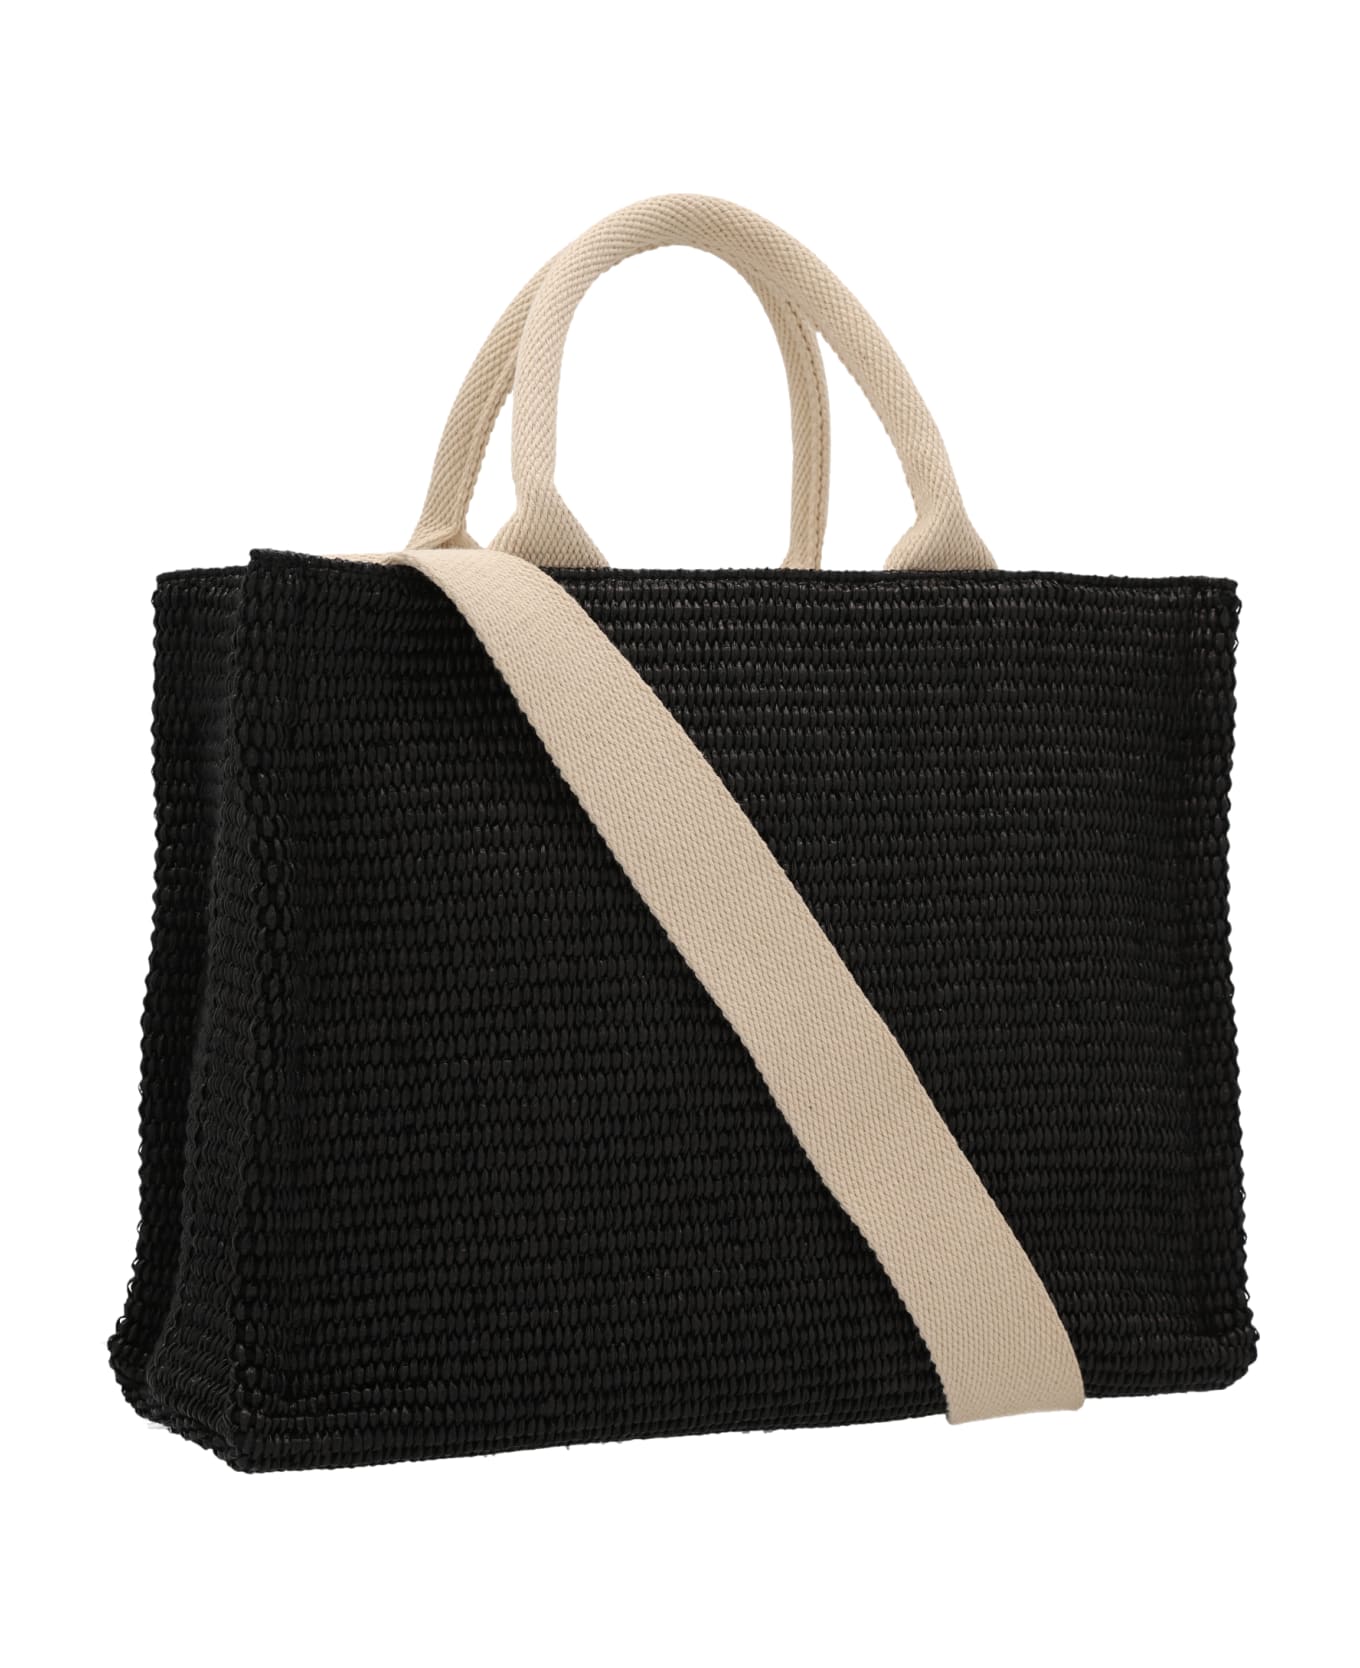 Marni 'mini Tote' Shopping Bag - Black  